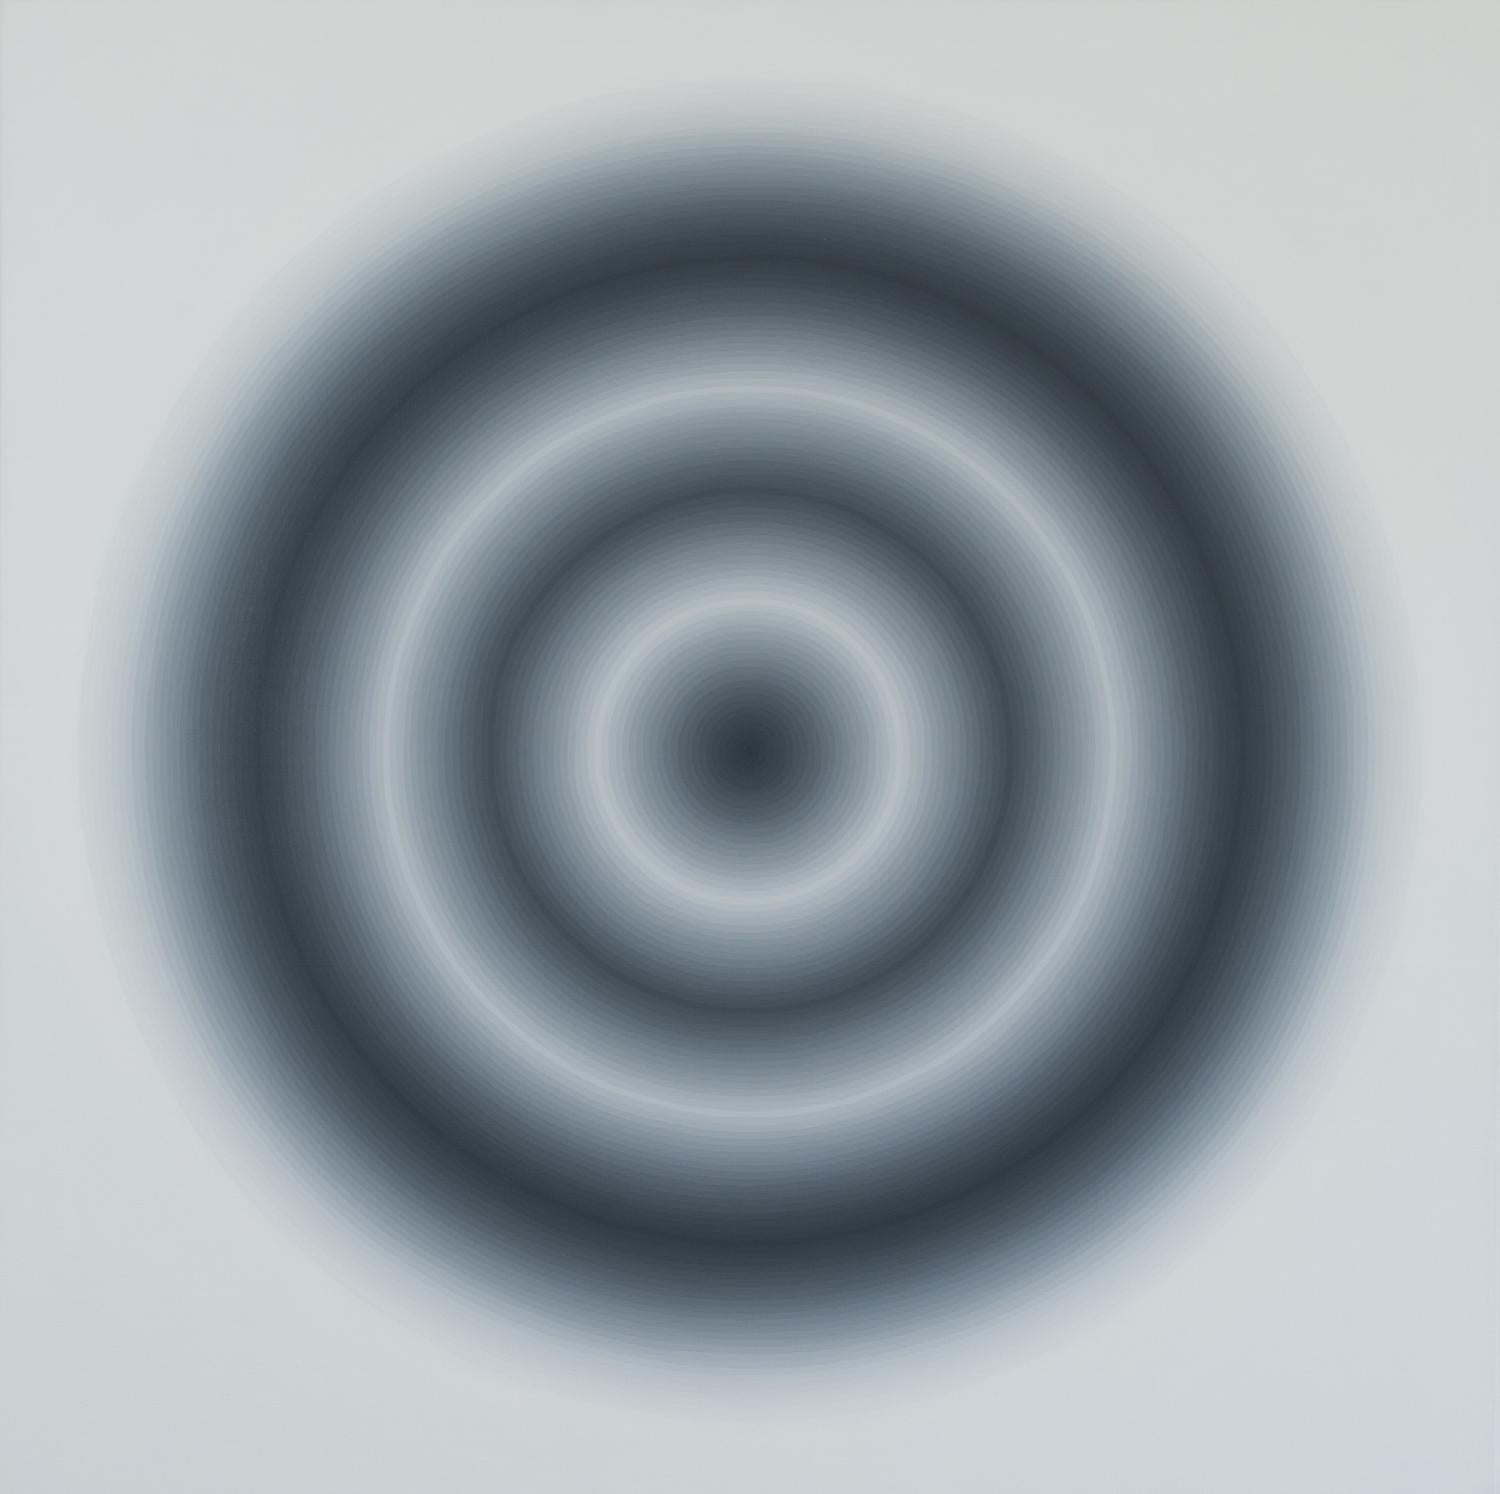 Abstract Painting Eliza Kopec - 99 cercles gris - peinture géométrique abstraite contemporaine et moderne sur toile